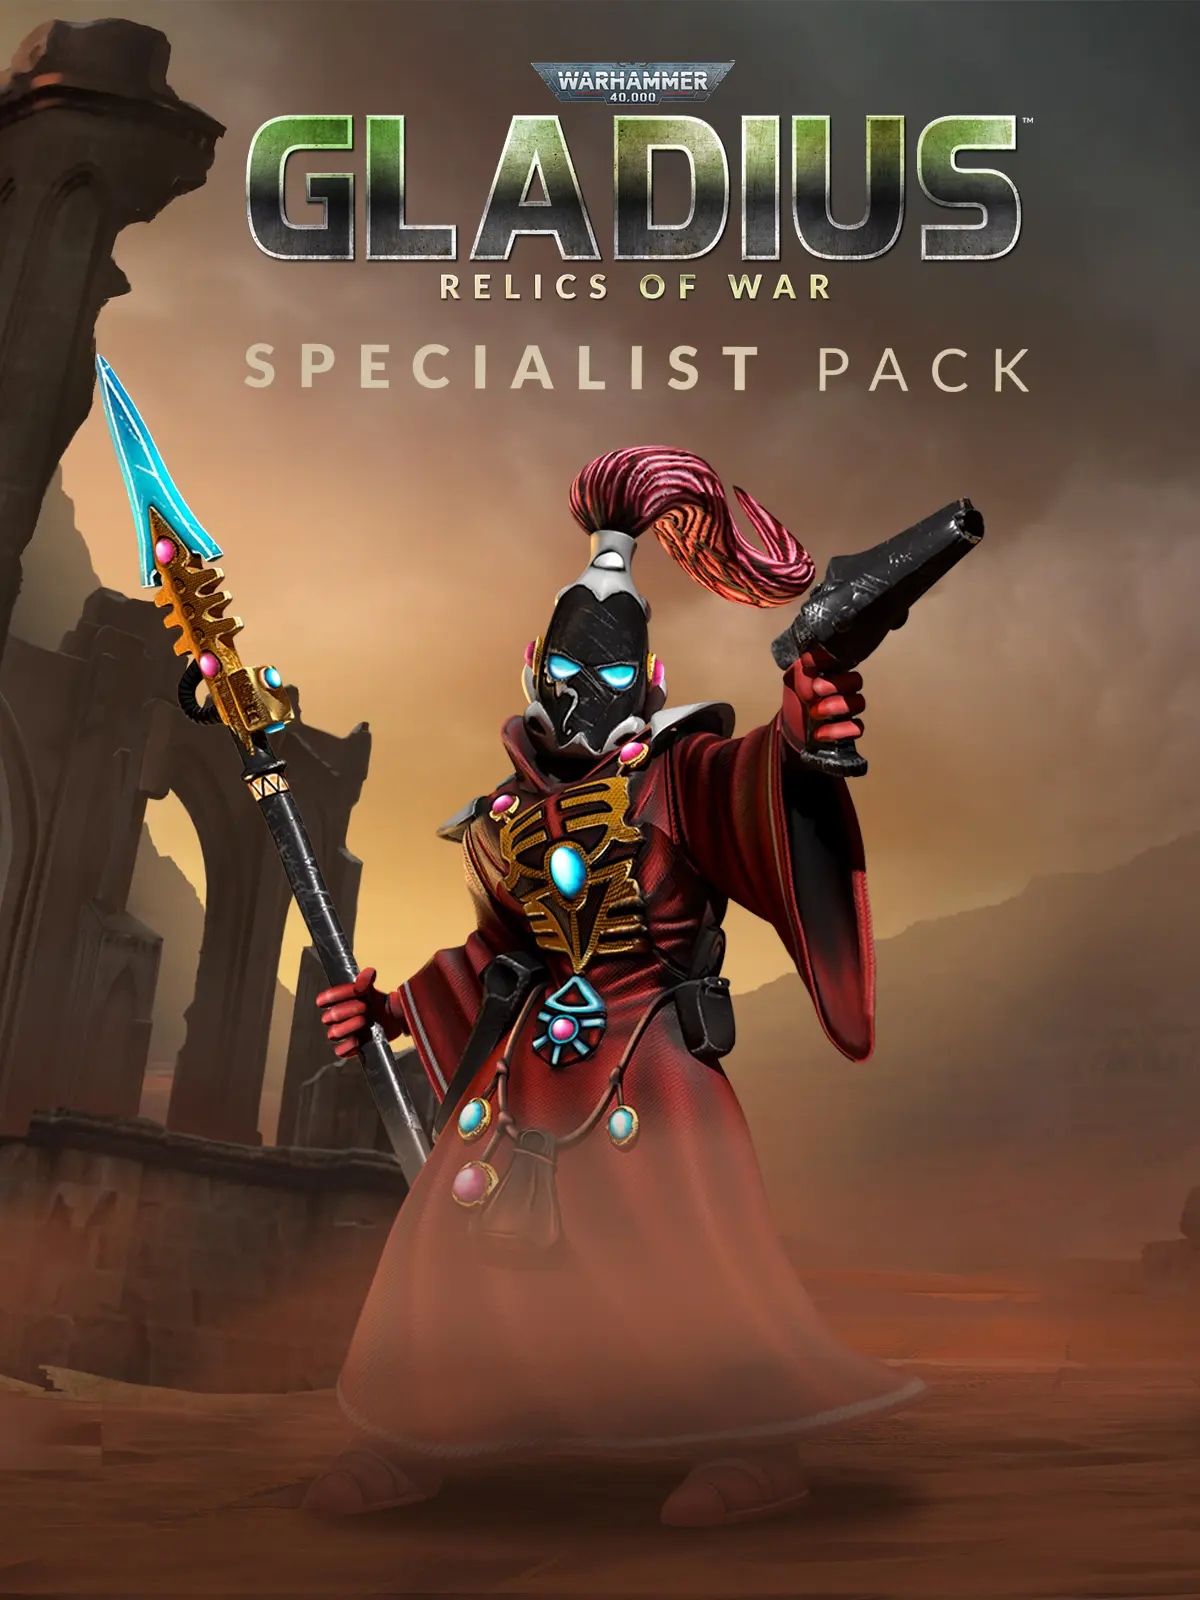 Warhammer 40,000: Gladius - Specialist Pack DLC (PC) - Steam - Digital Code